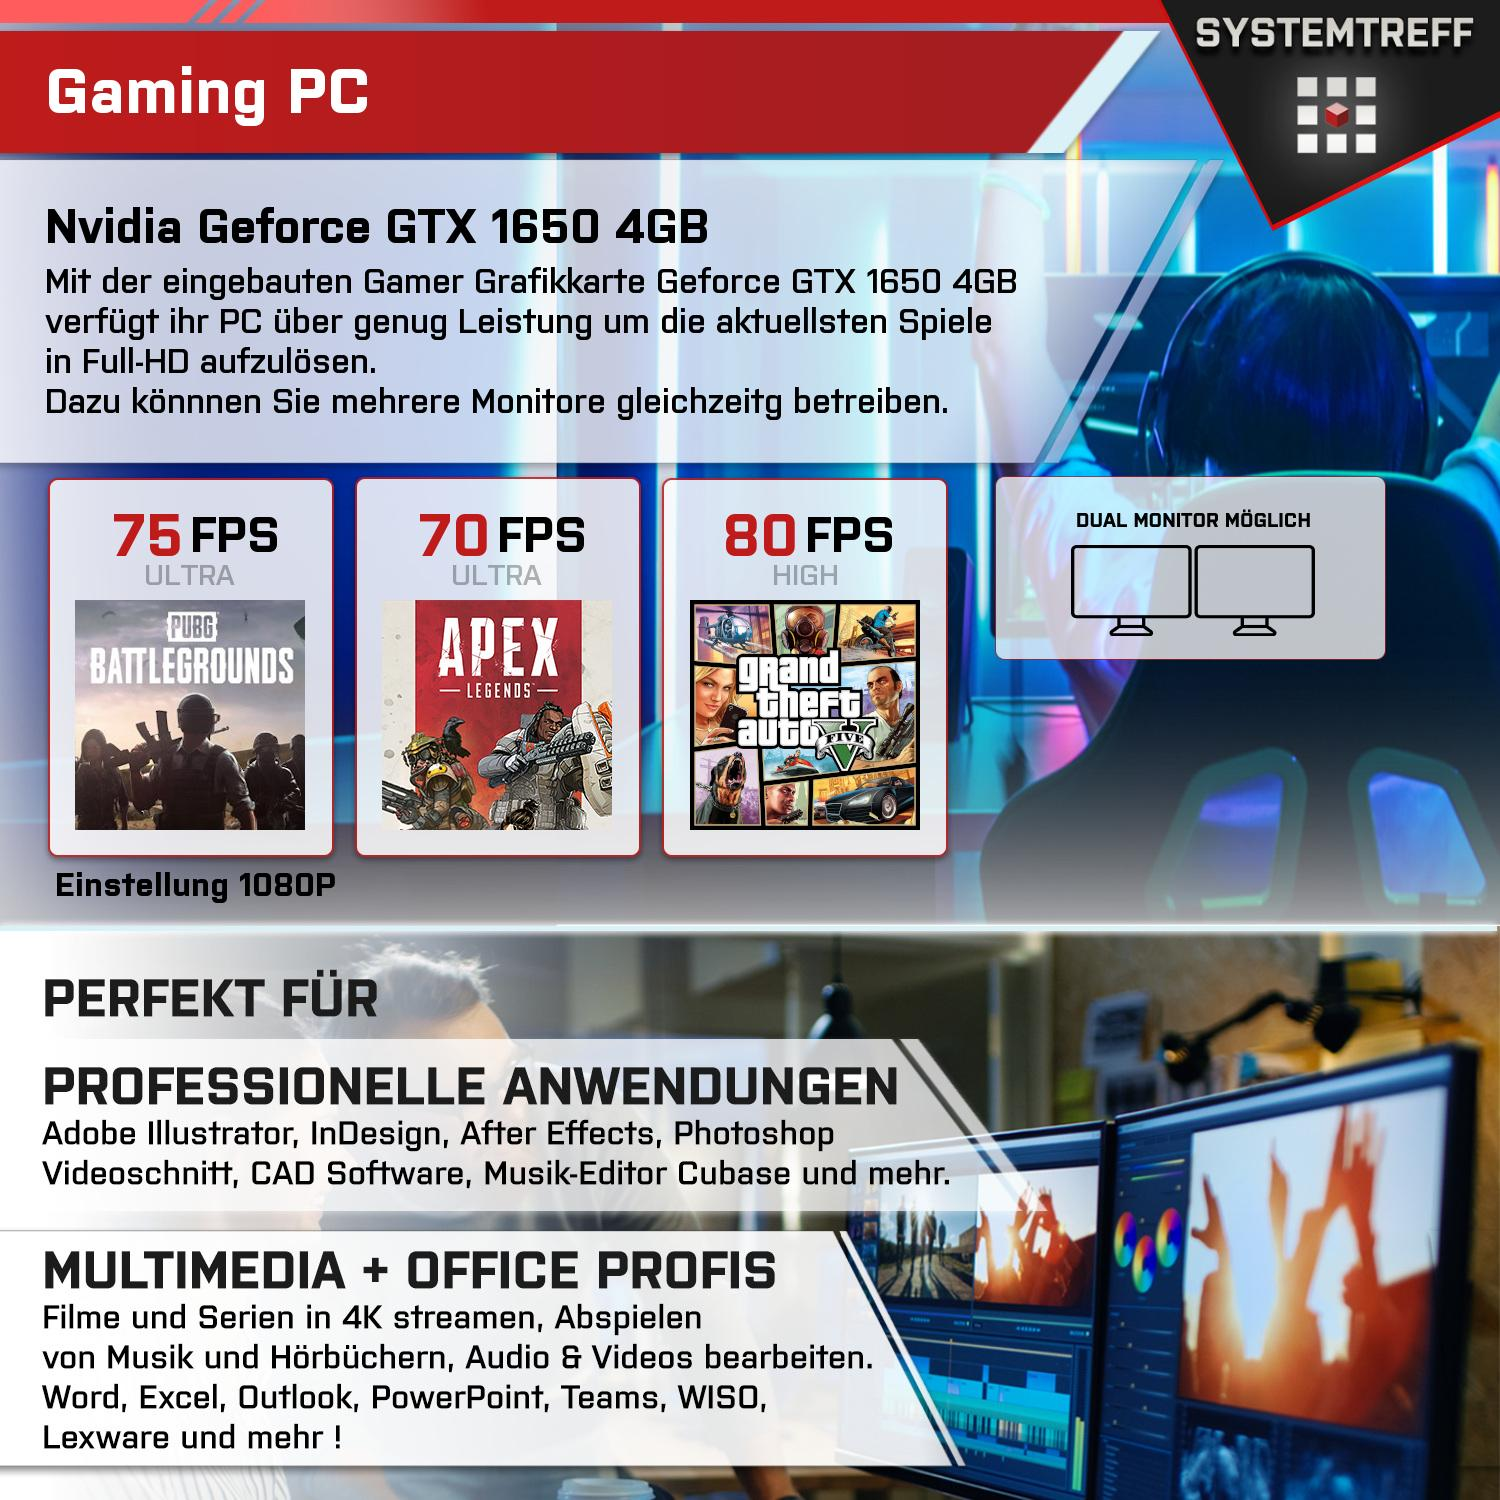 SYSTEMTREFF Gaming Komplett AMD 4 5600 GTX mit 1650 5 16 GB mSSD, GB, Geforce 5600, GB RAM, 4 512 GB PC Ryzen Komplett Prozessor, Nvidia